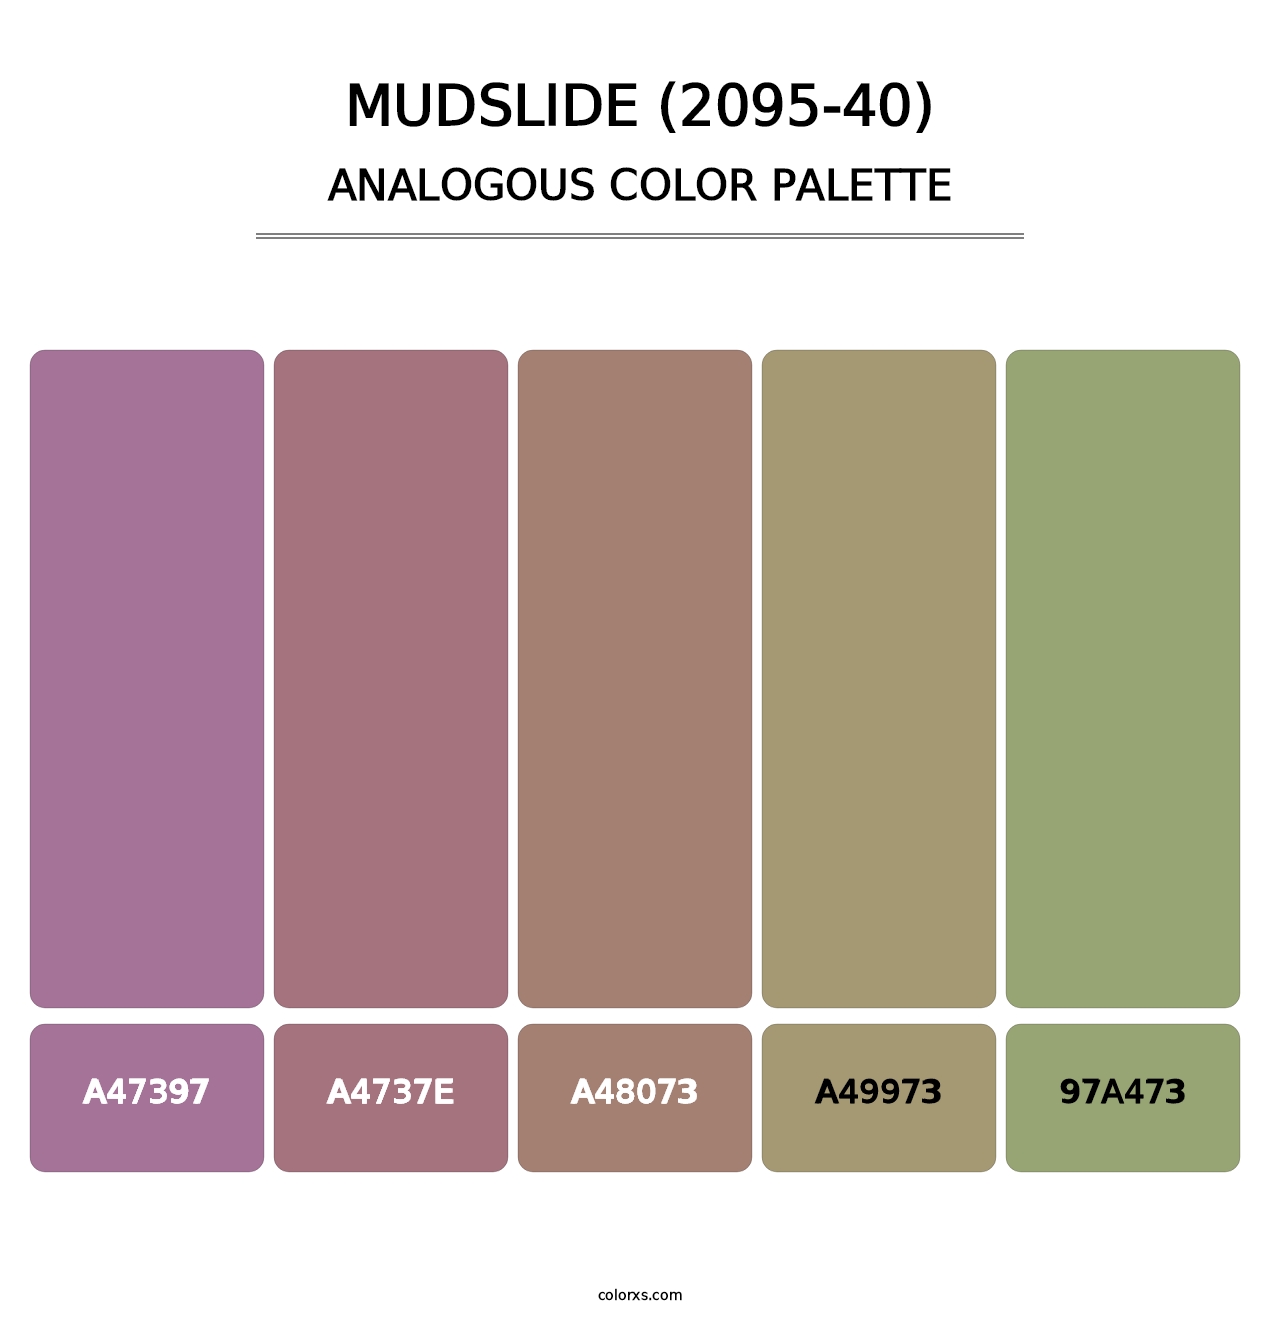 Mudslide (2095-40) - Analogous Color Palette